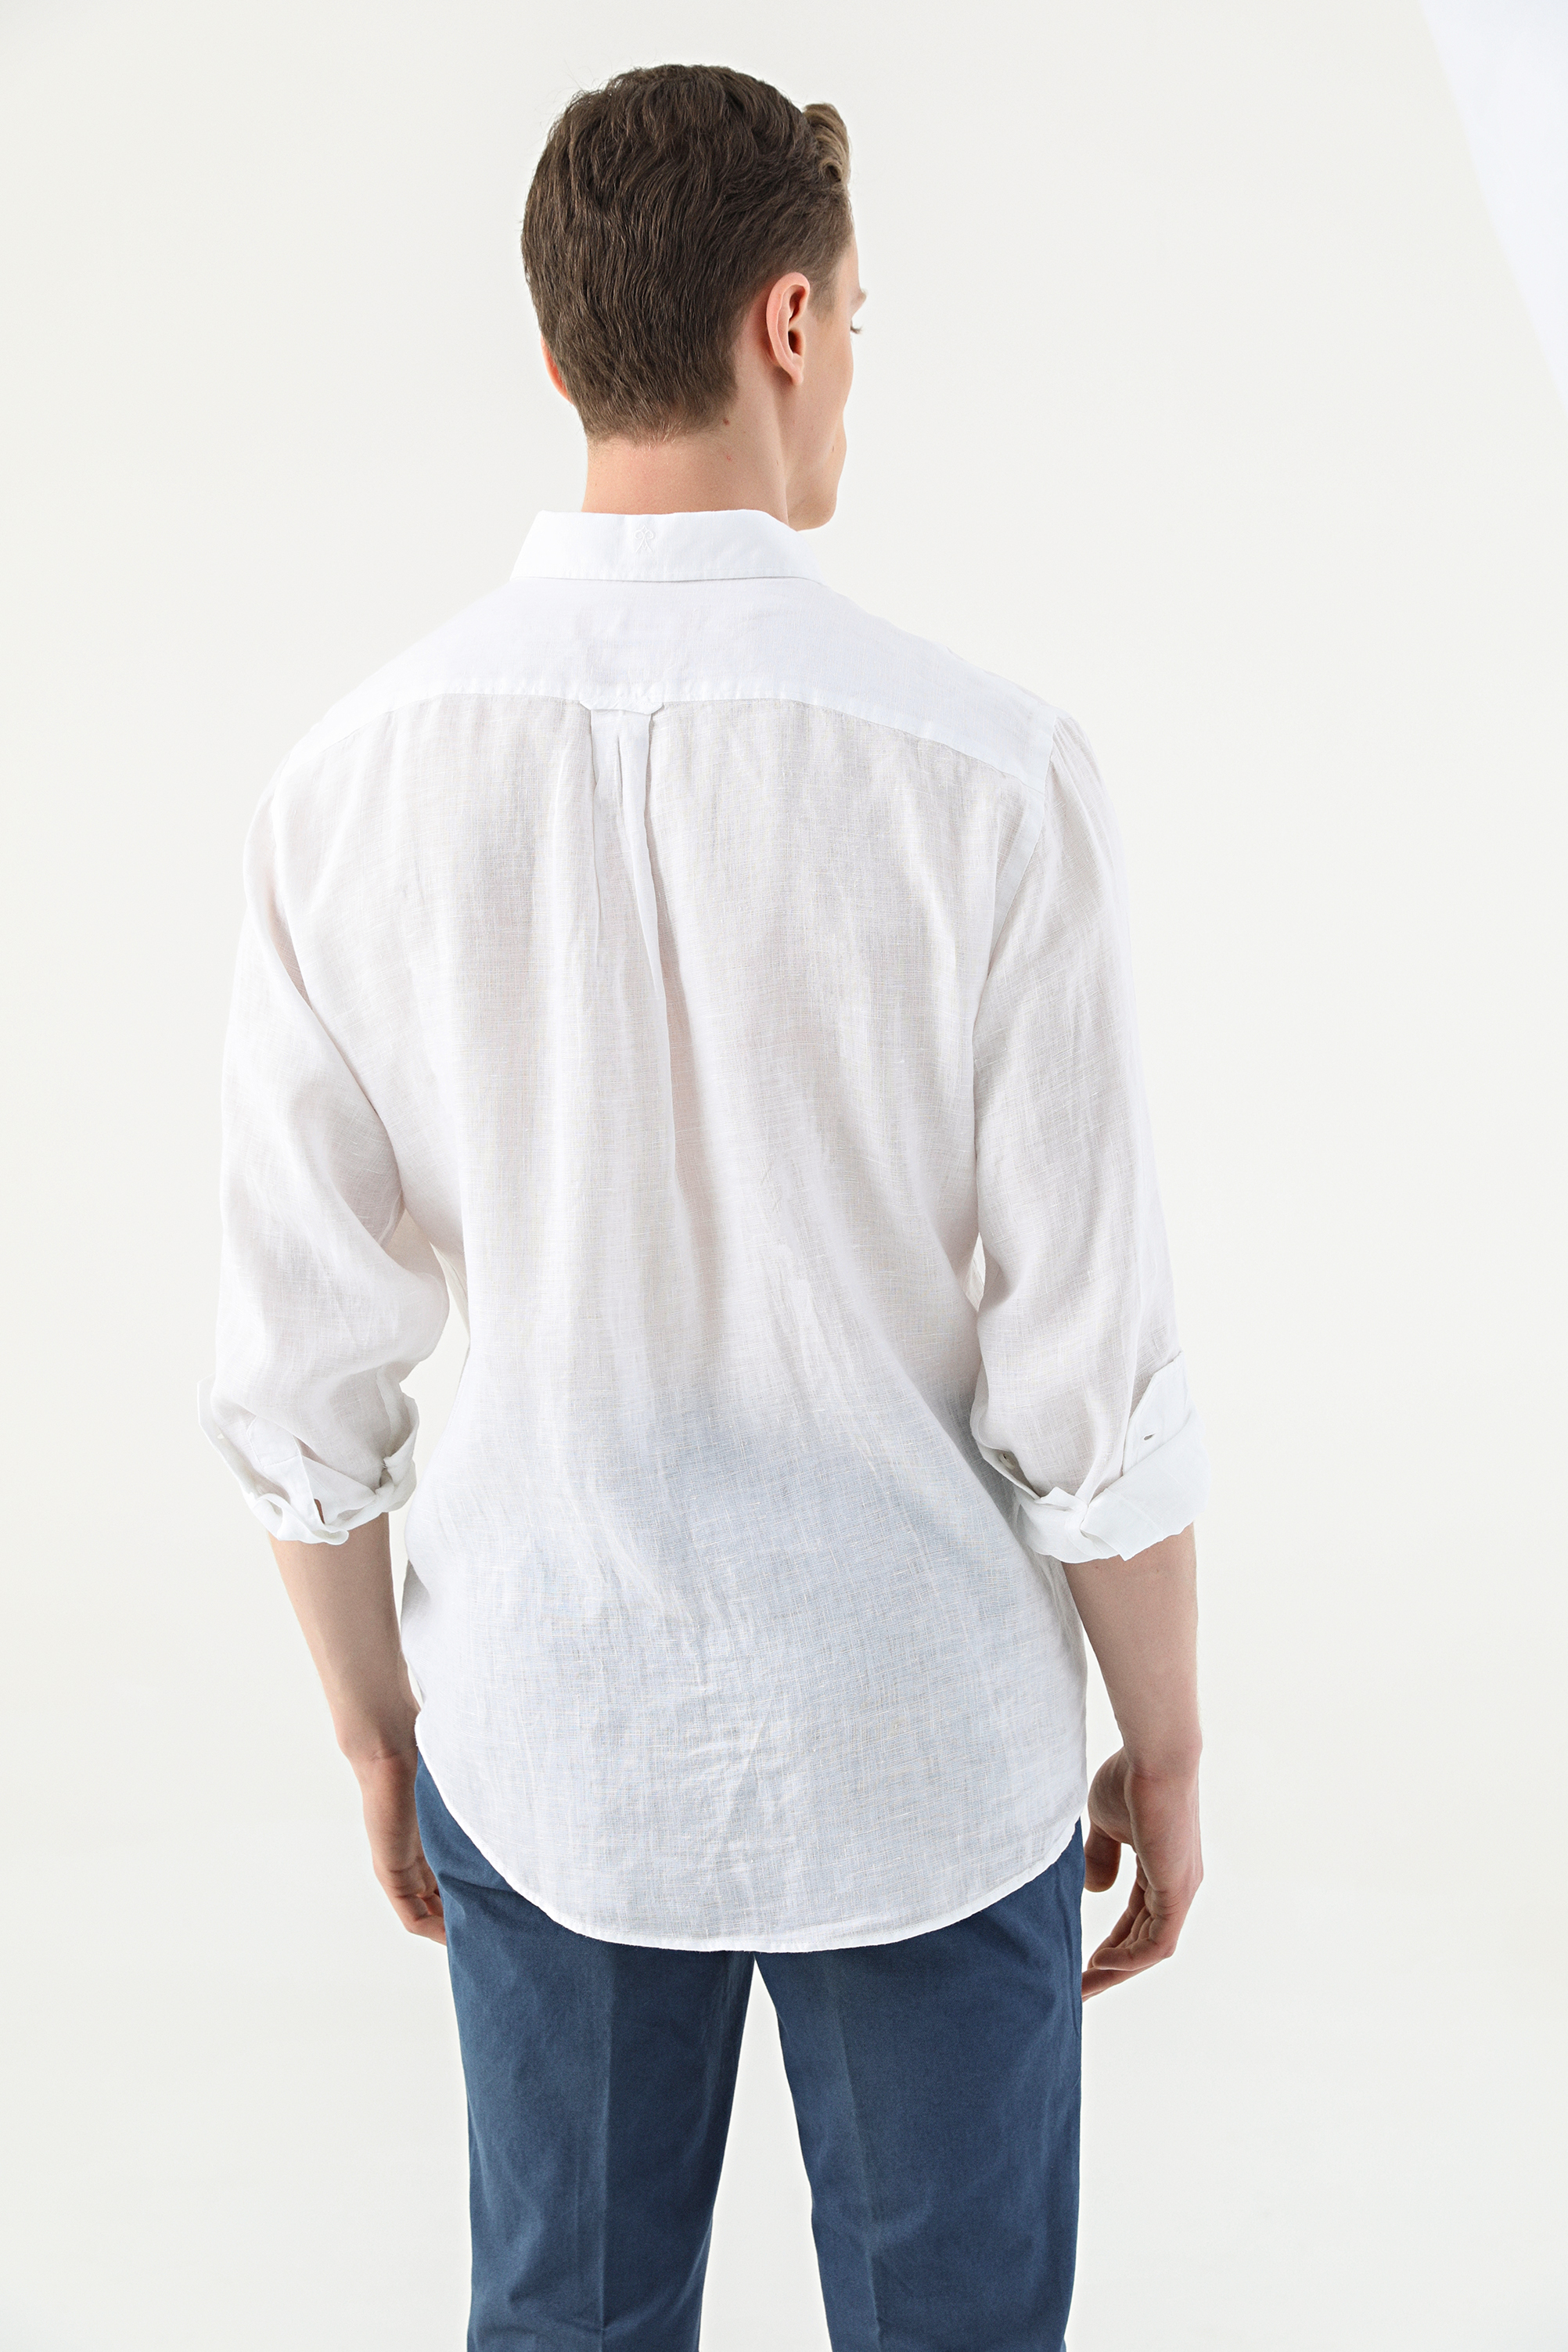 Damat Tween Damat Comfort Beyaz Düz Gömlek. 4